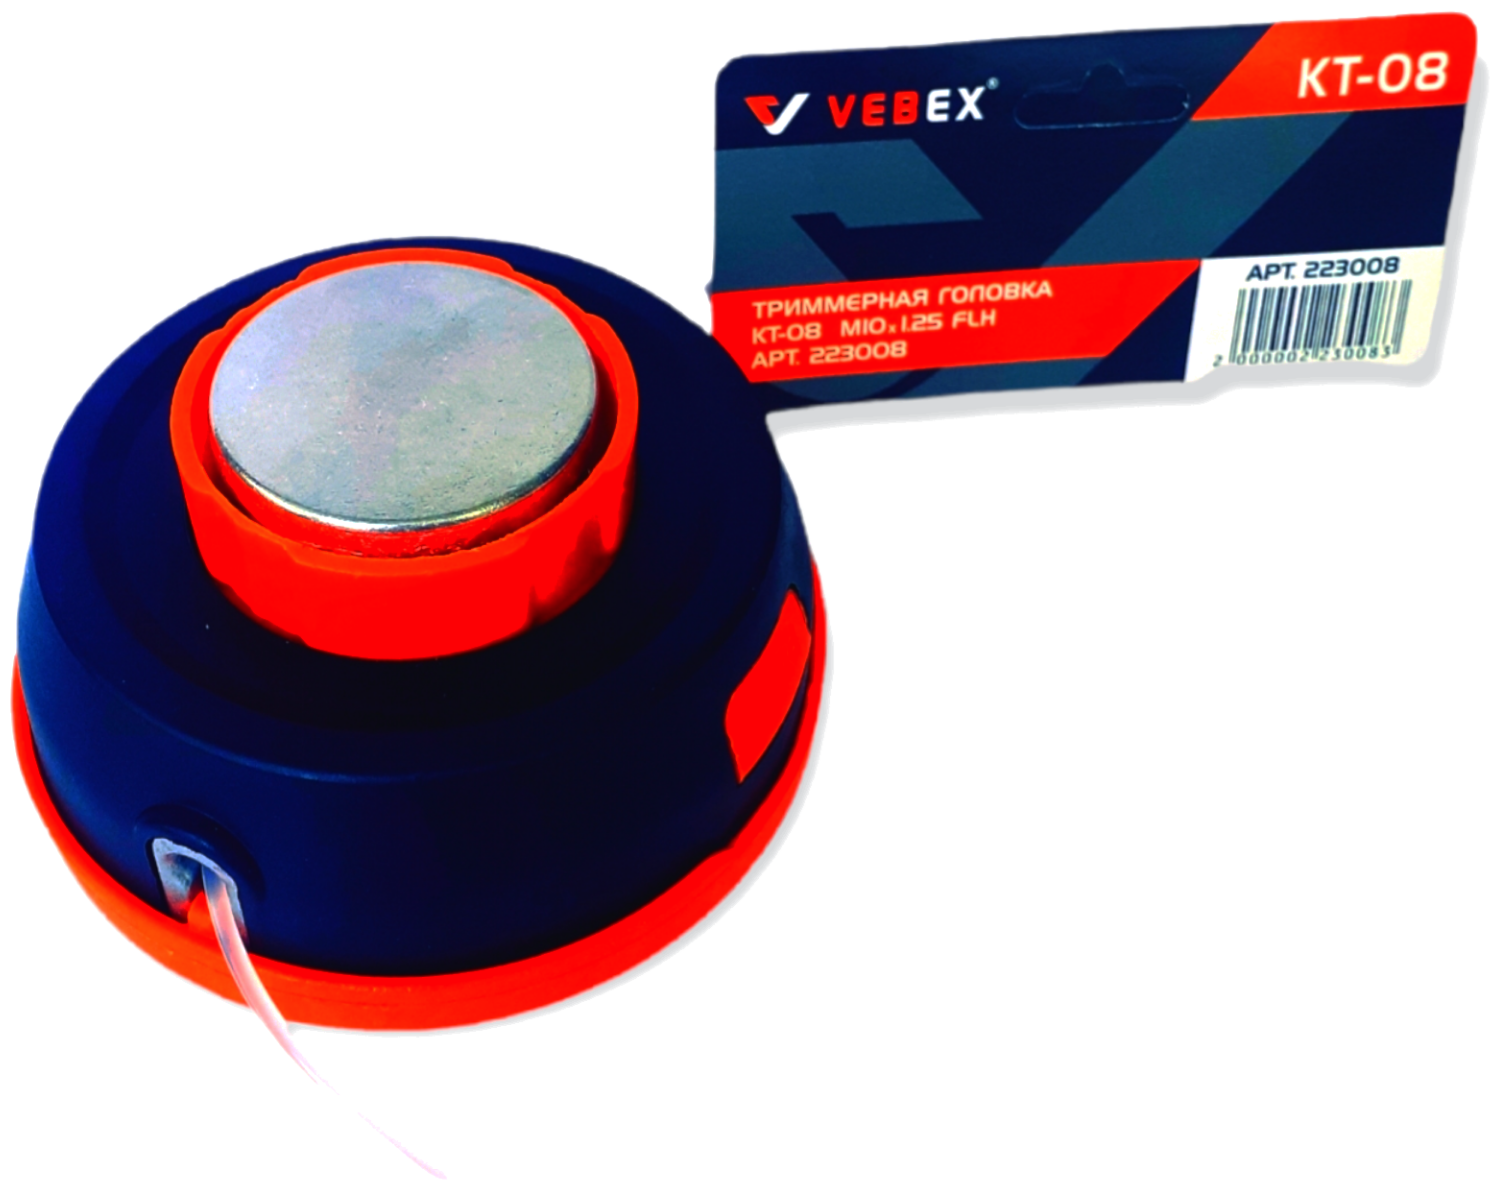 Катушка VEBEX KT-08 (головка) для триммера универсальная, полуавтоматическая с кнопкой, левая резьба - фотография № 3